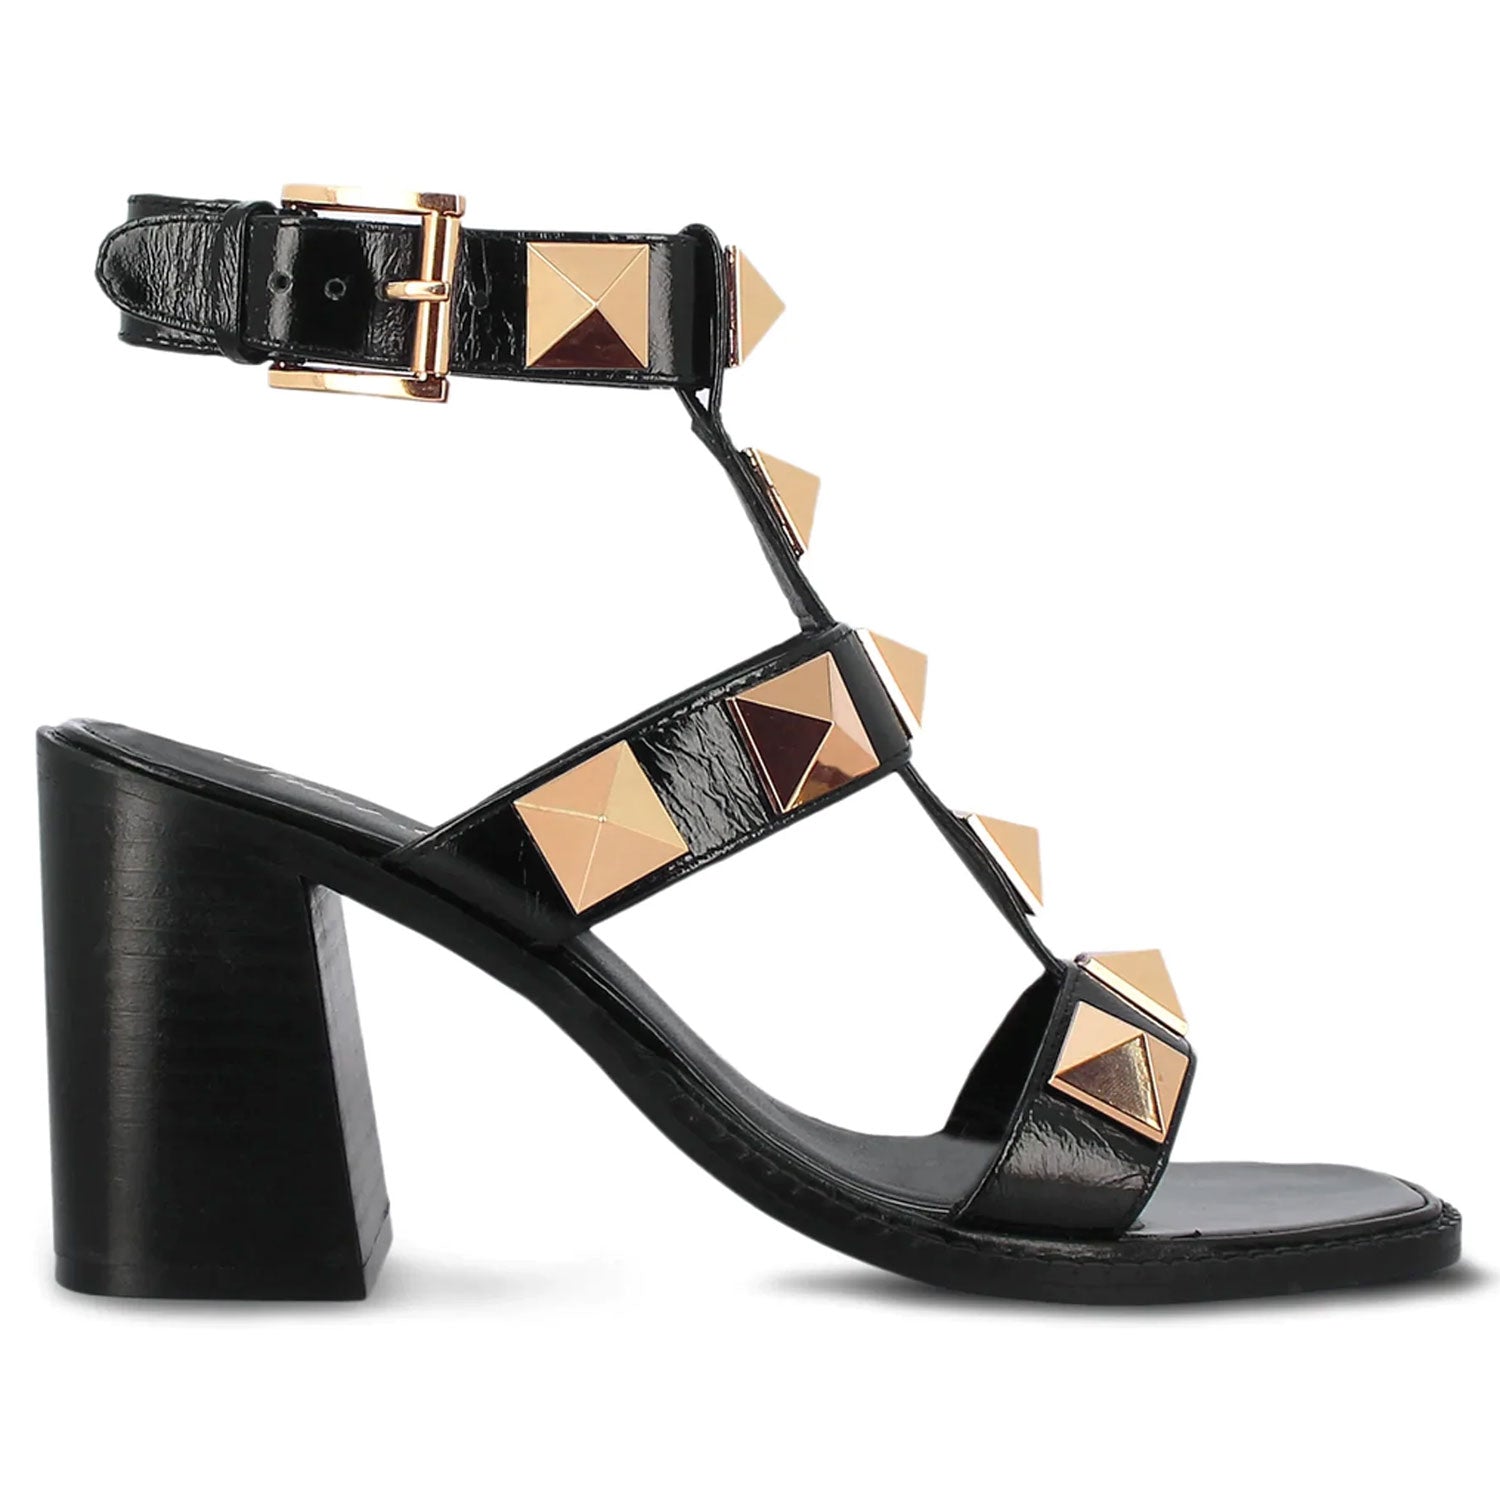 Studded Ankle Strap High Heel Sandals - Black Suede